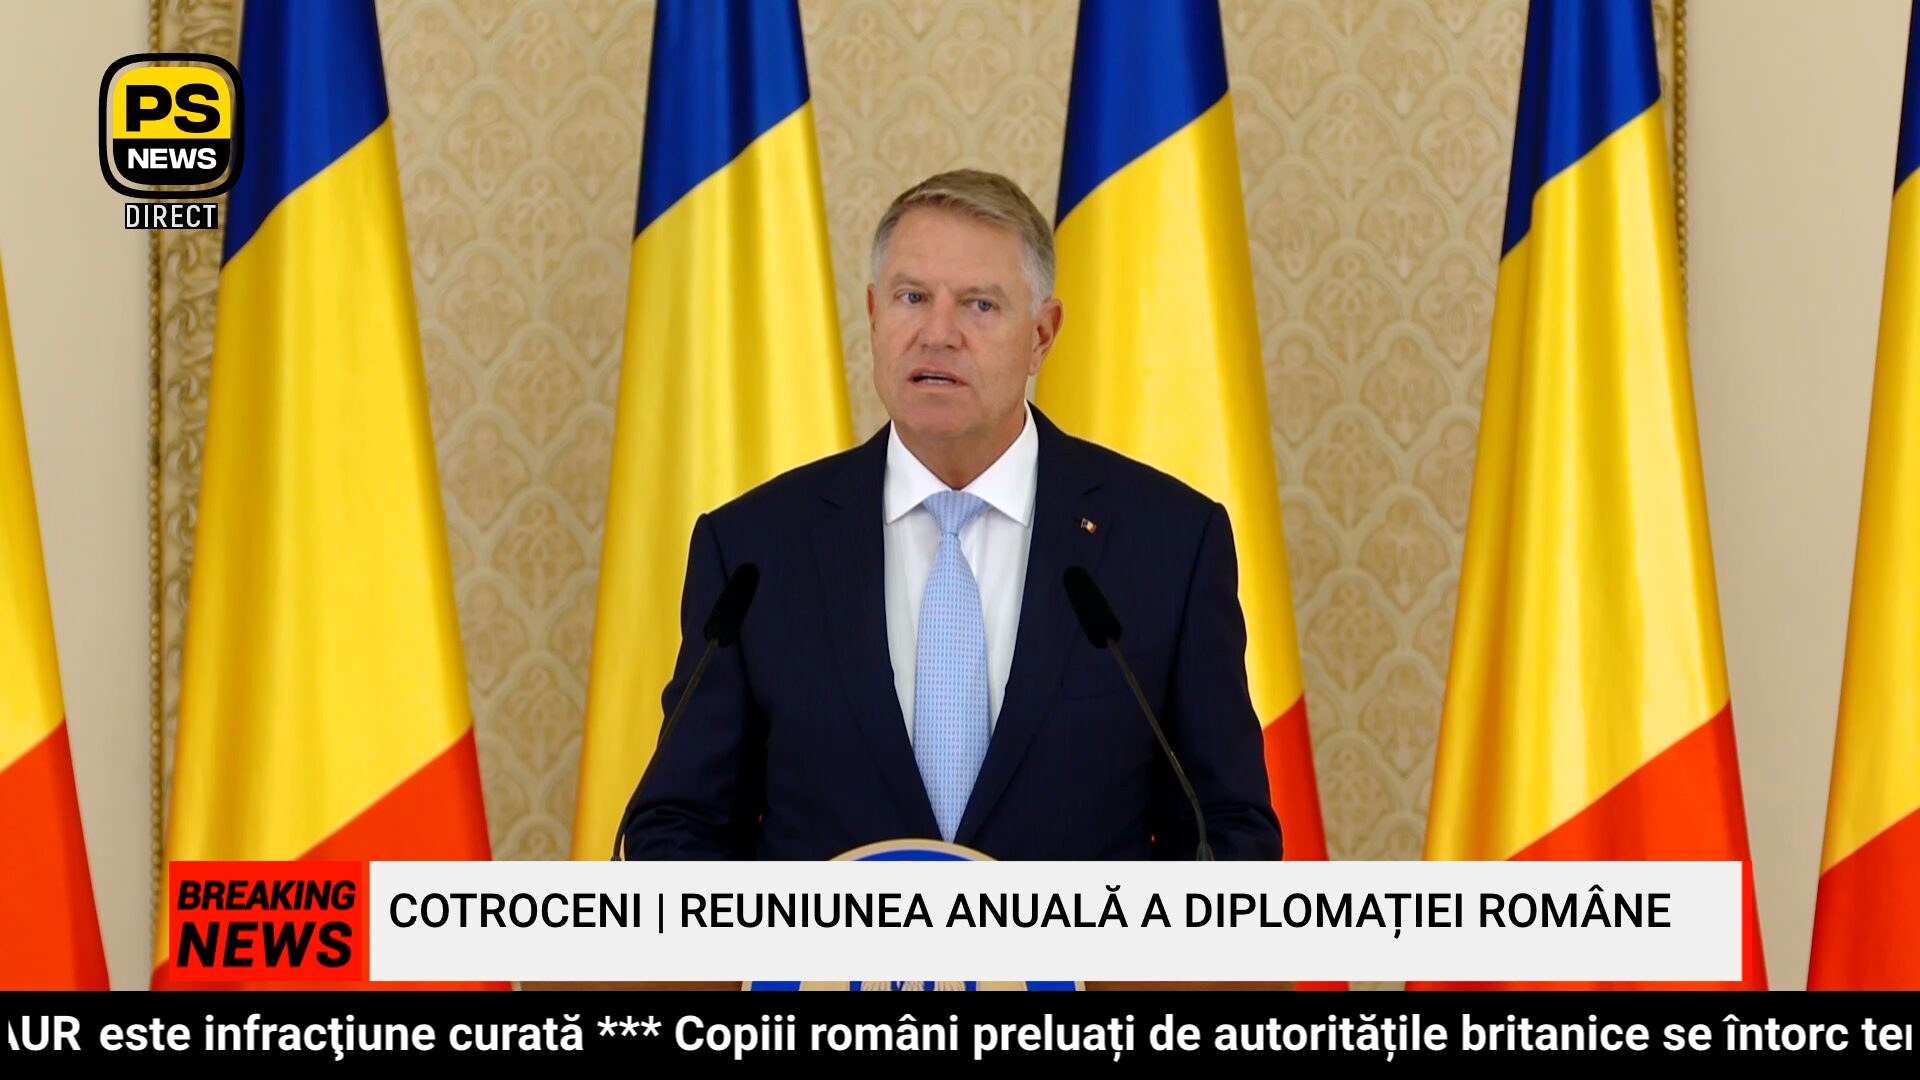 PS News TV | Cotroceni | Reuniunea Anuală a Diplomaţiei Române